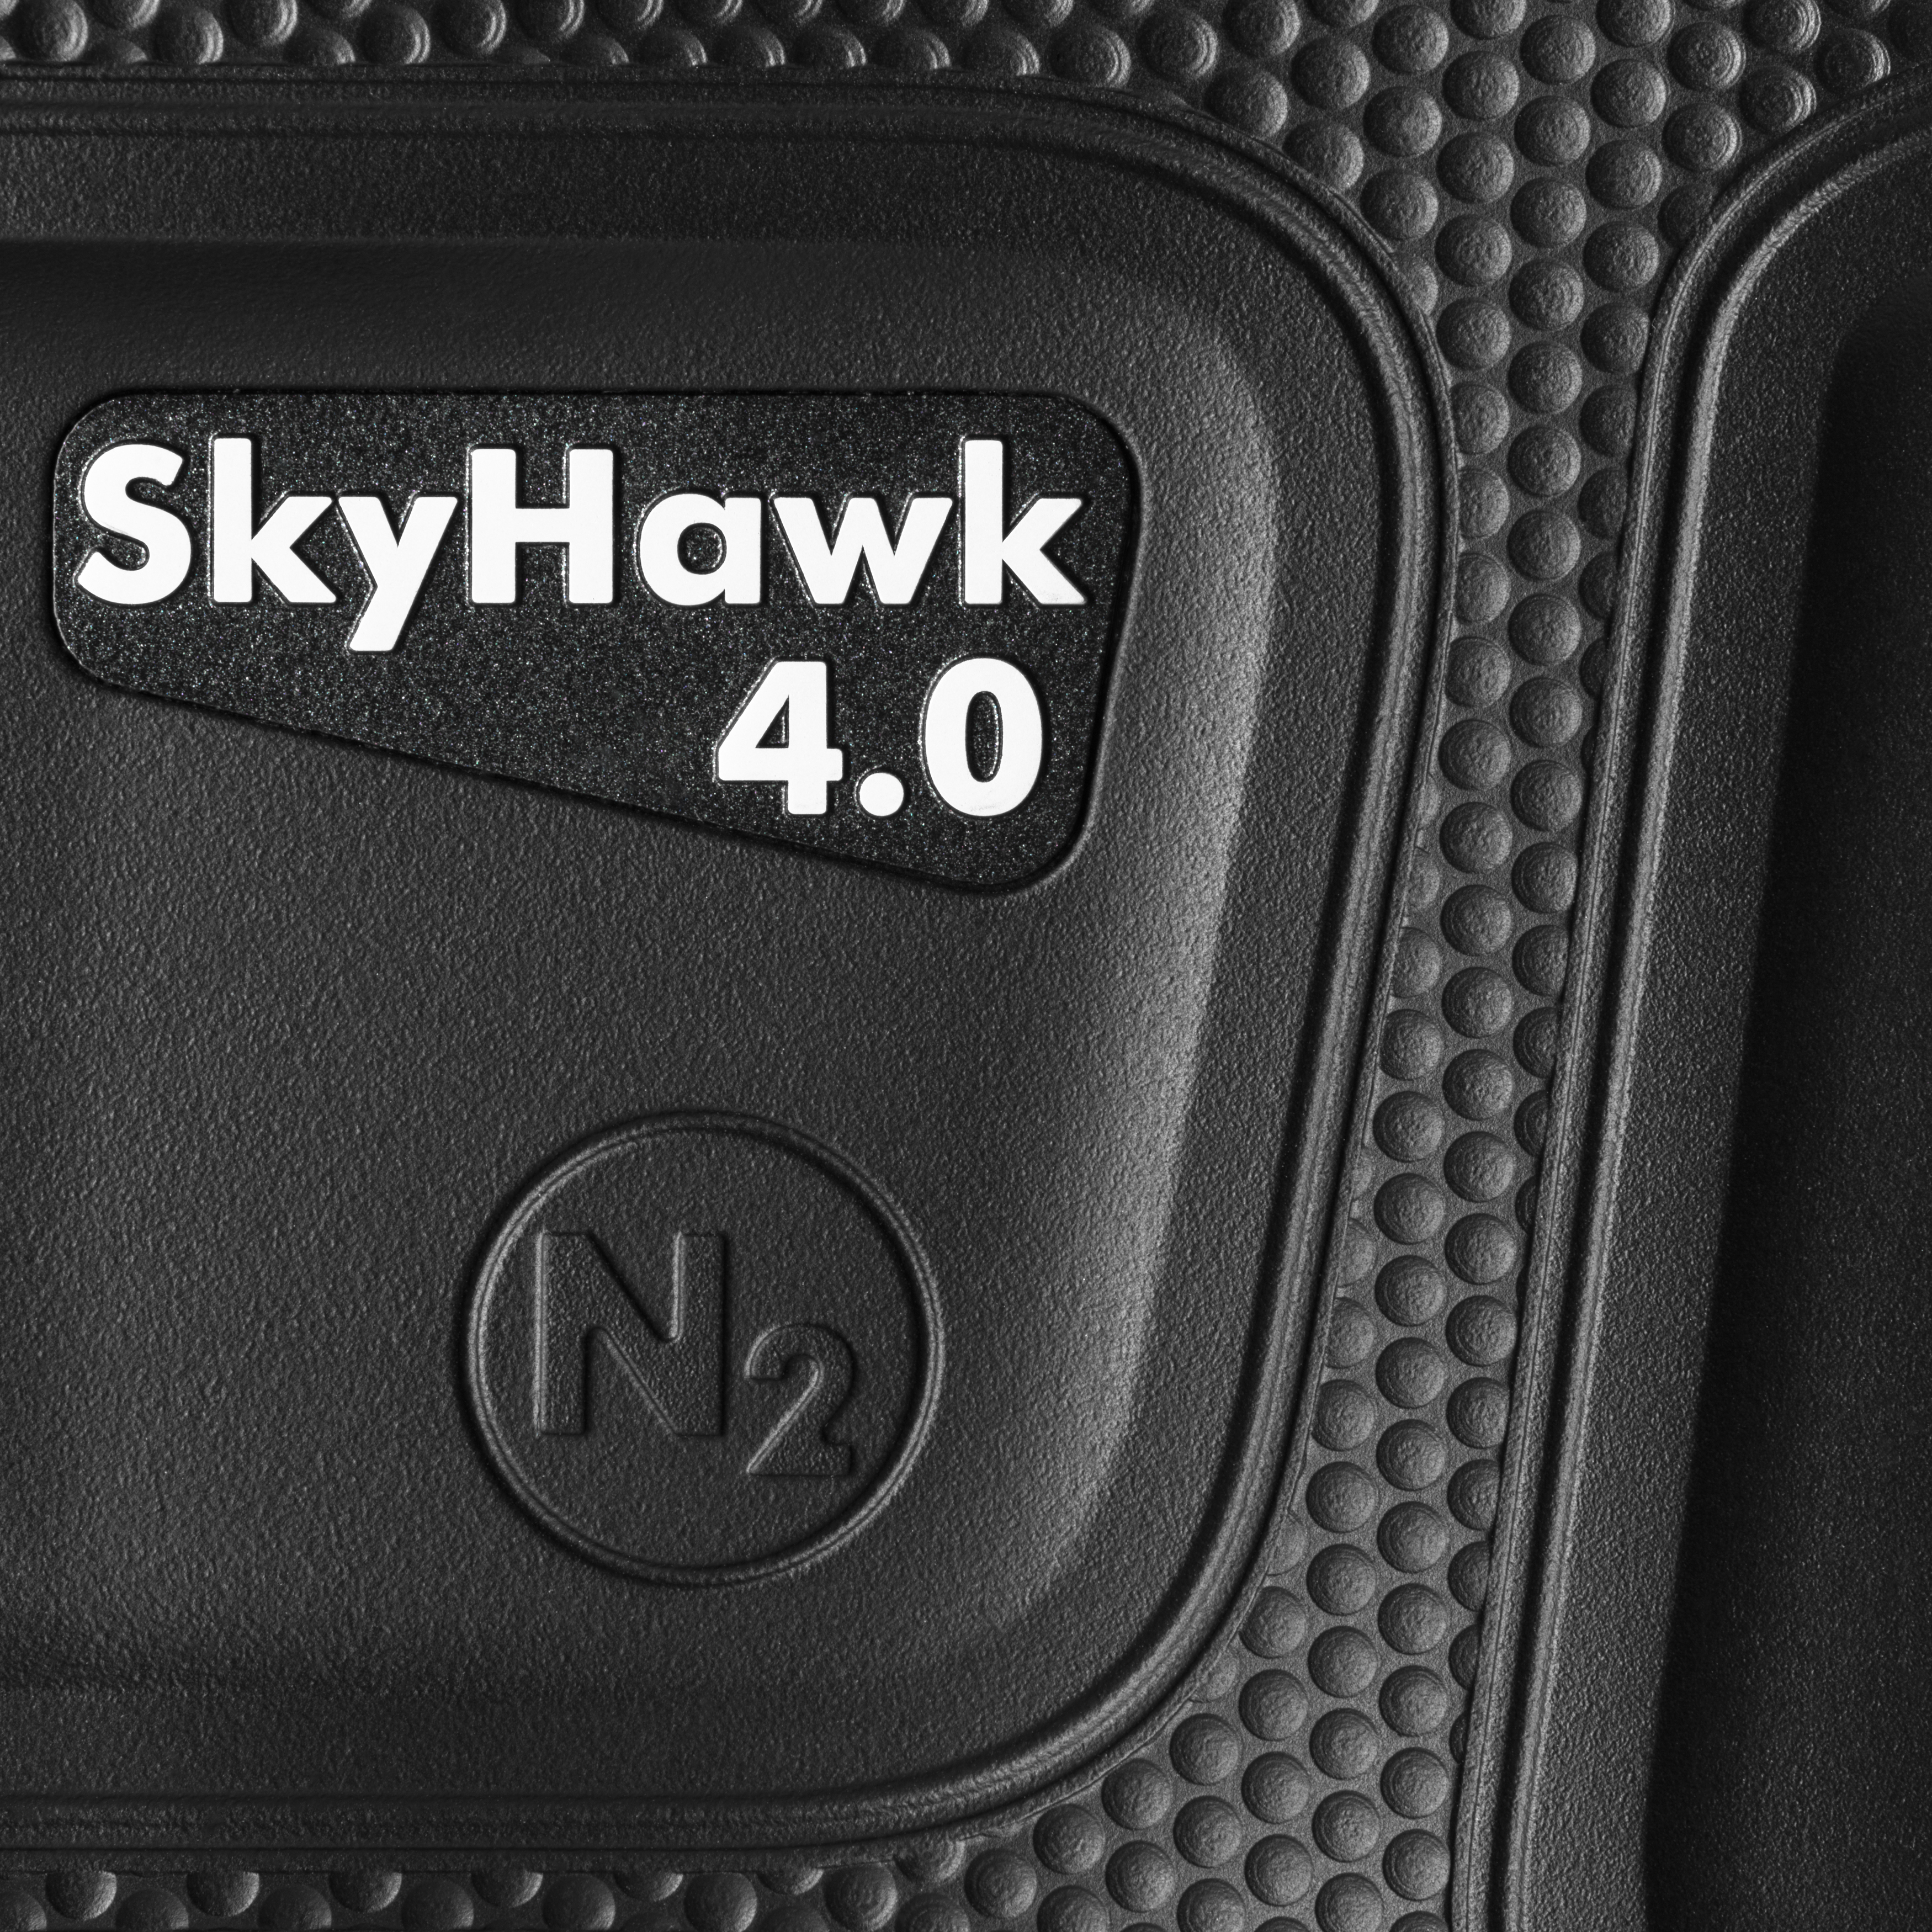 STEINER SkyHawk 4.0 42 mm, 10x, Fernglas